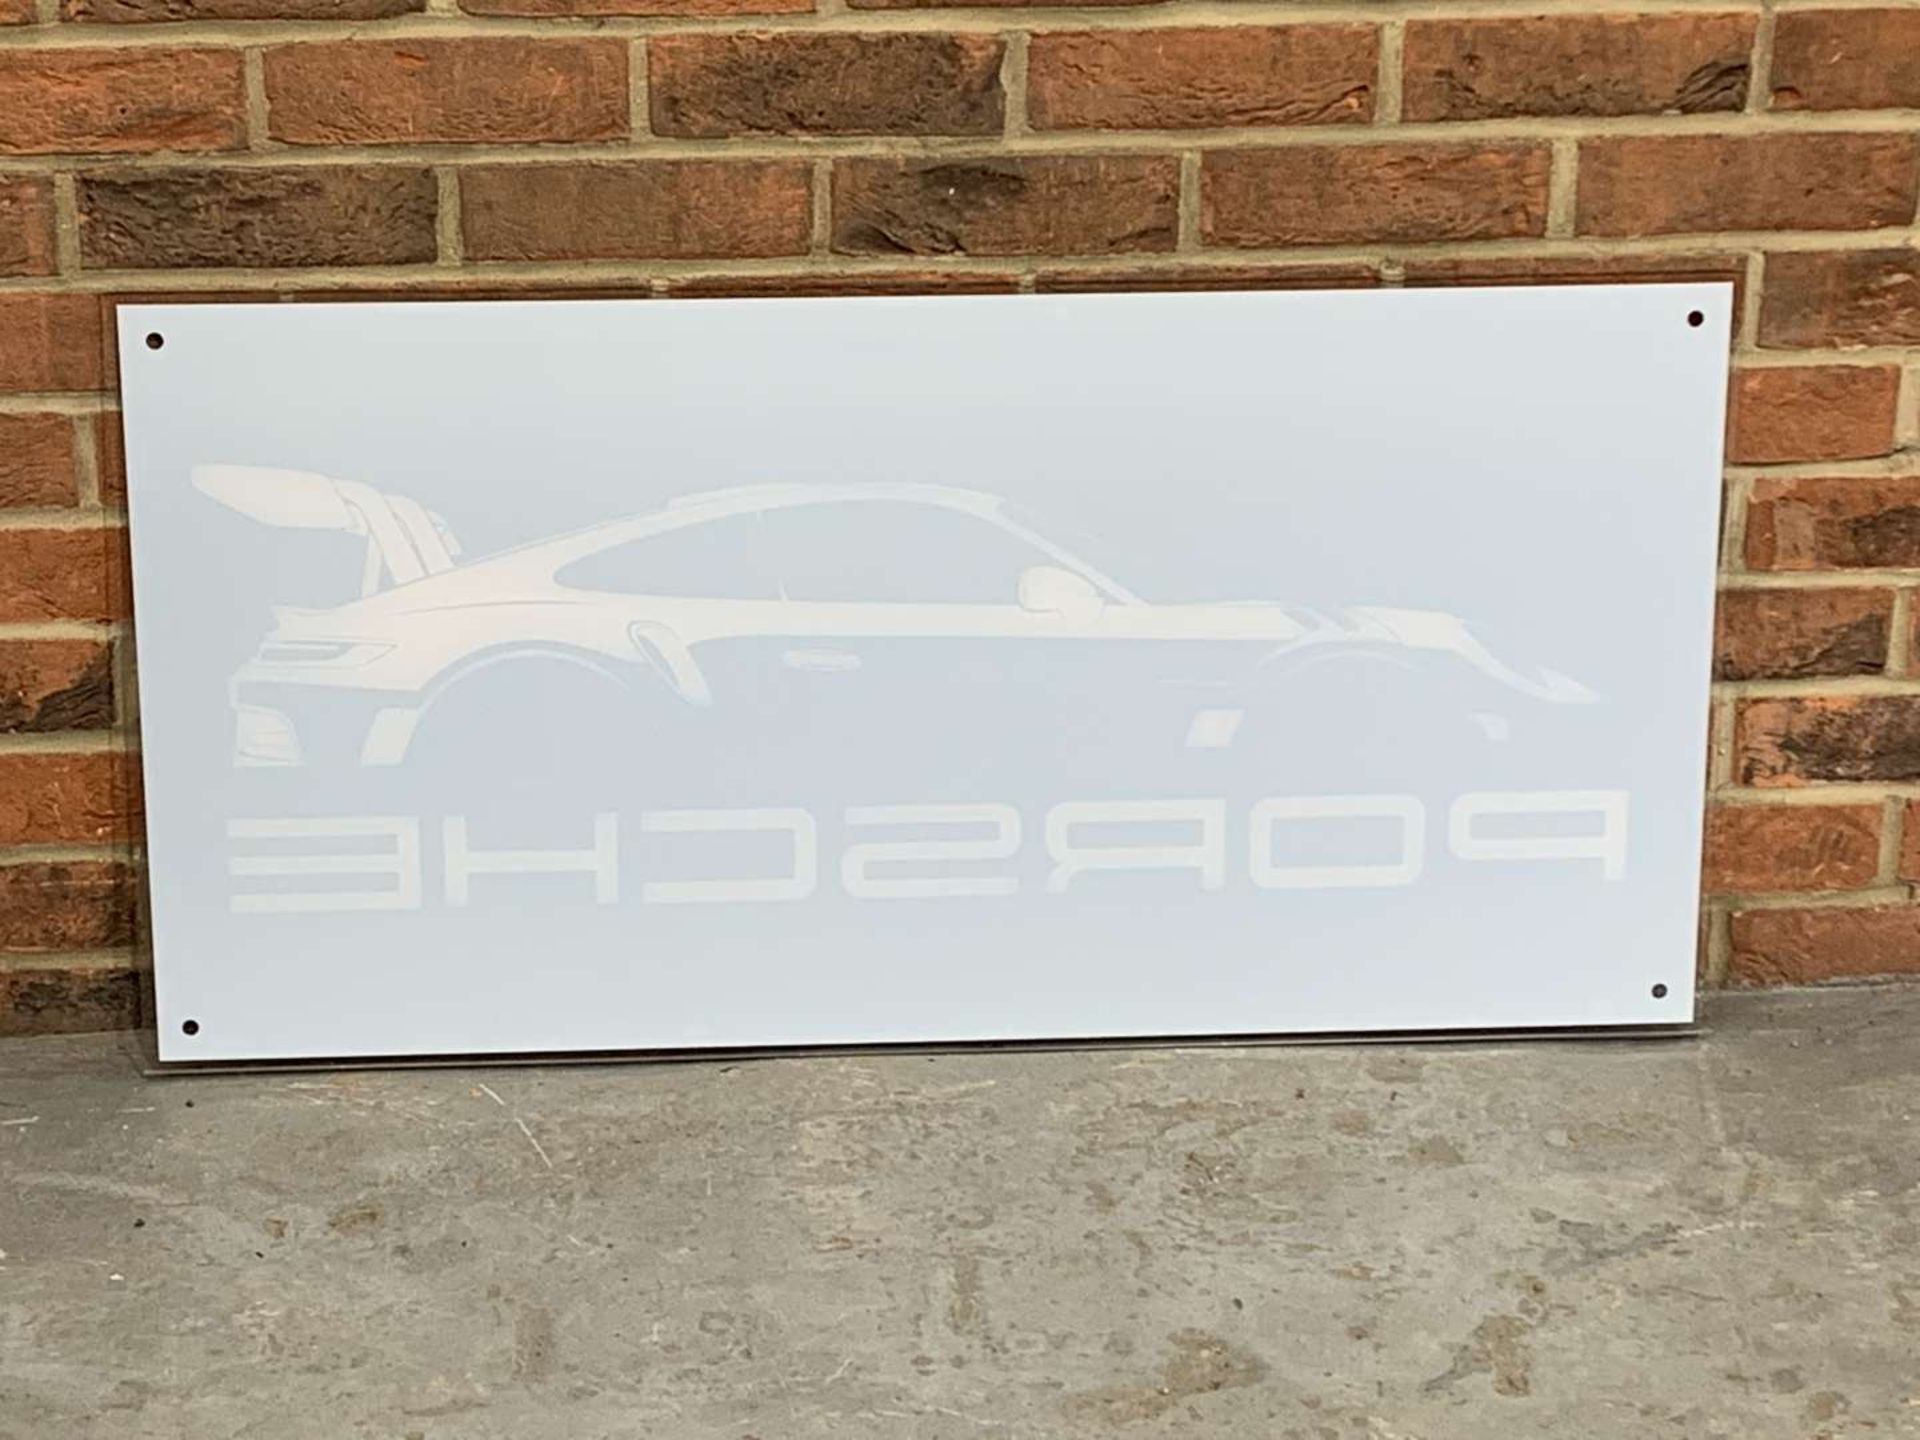 Porsche Perspex Sign - Image 2 of 2